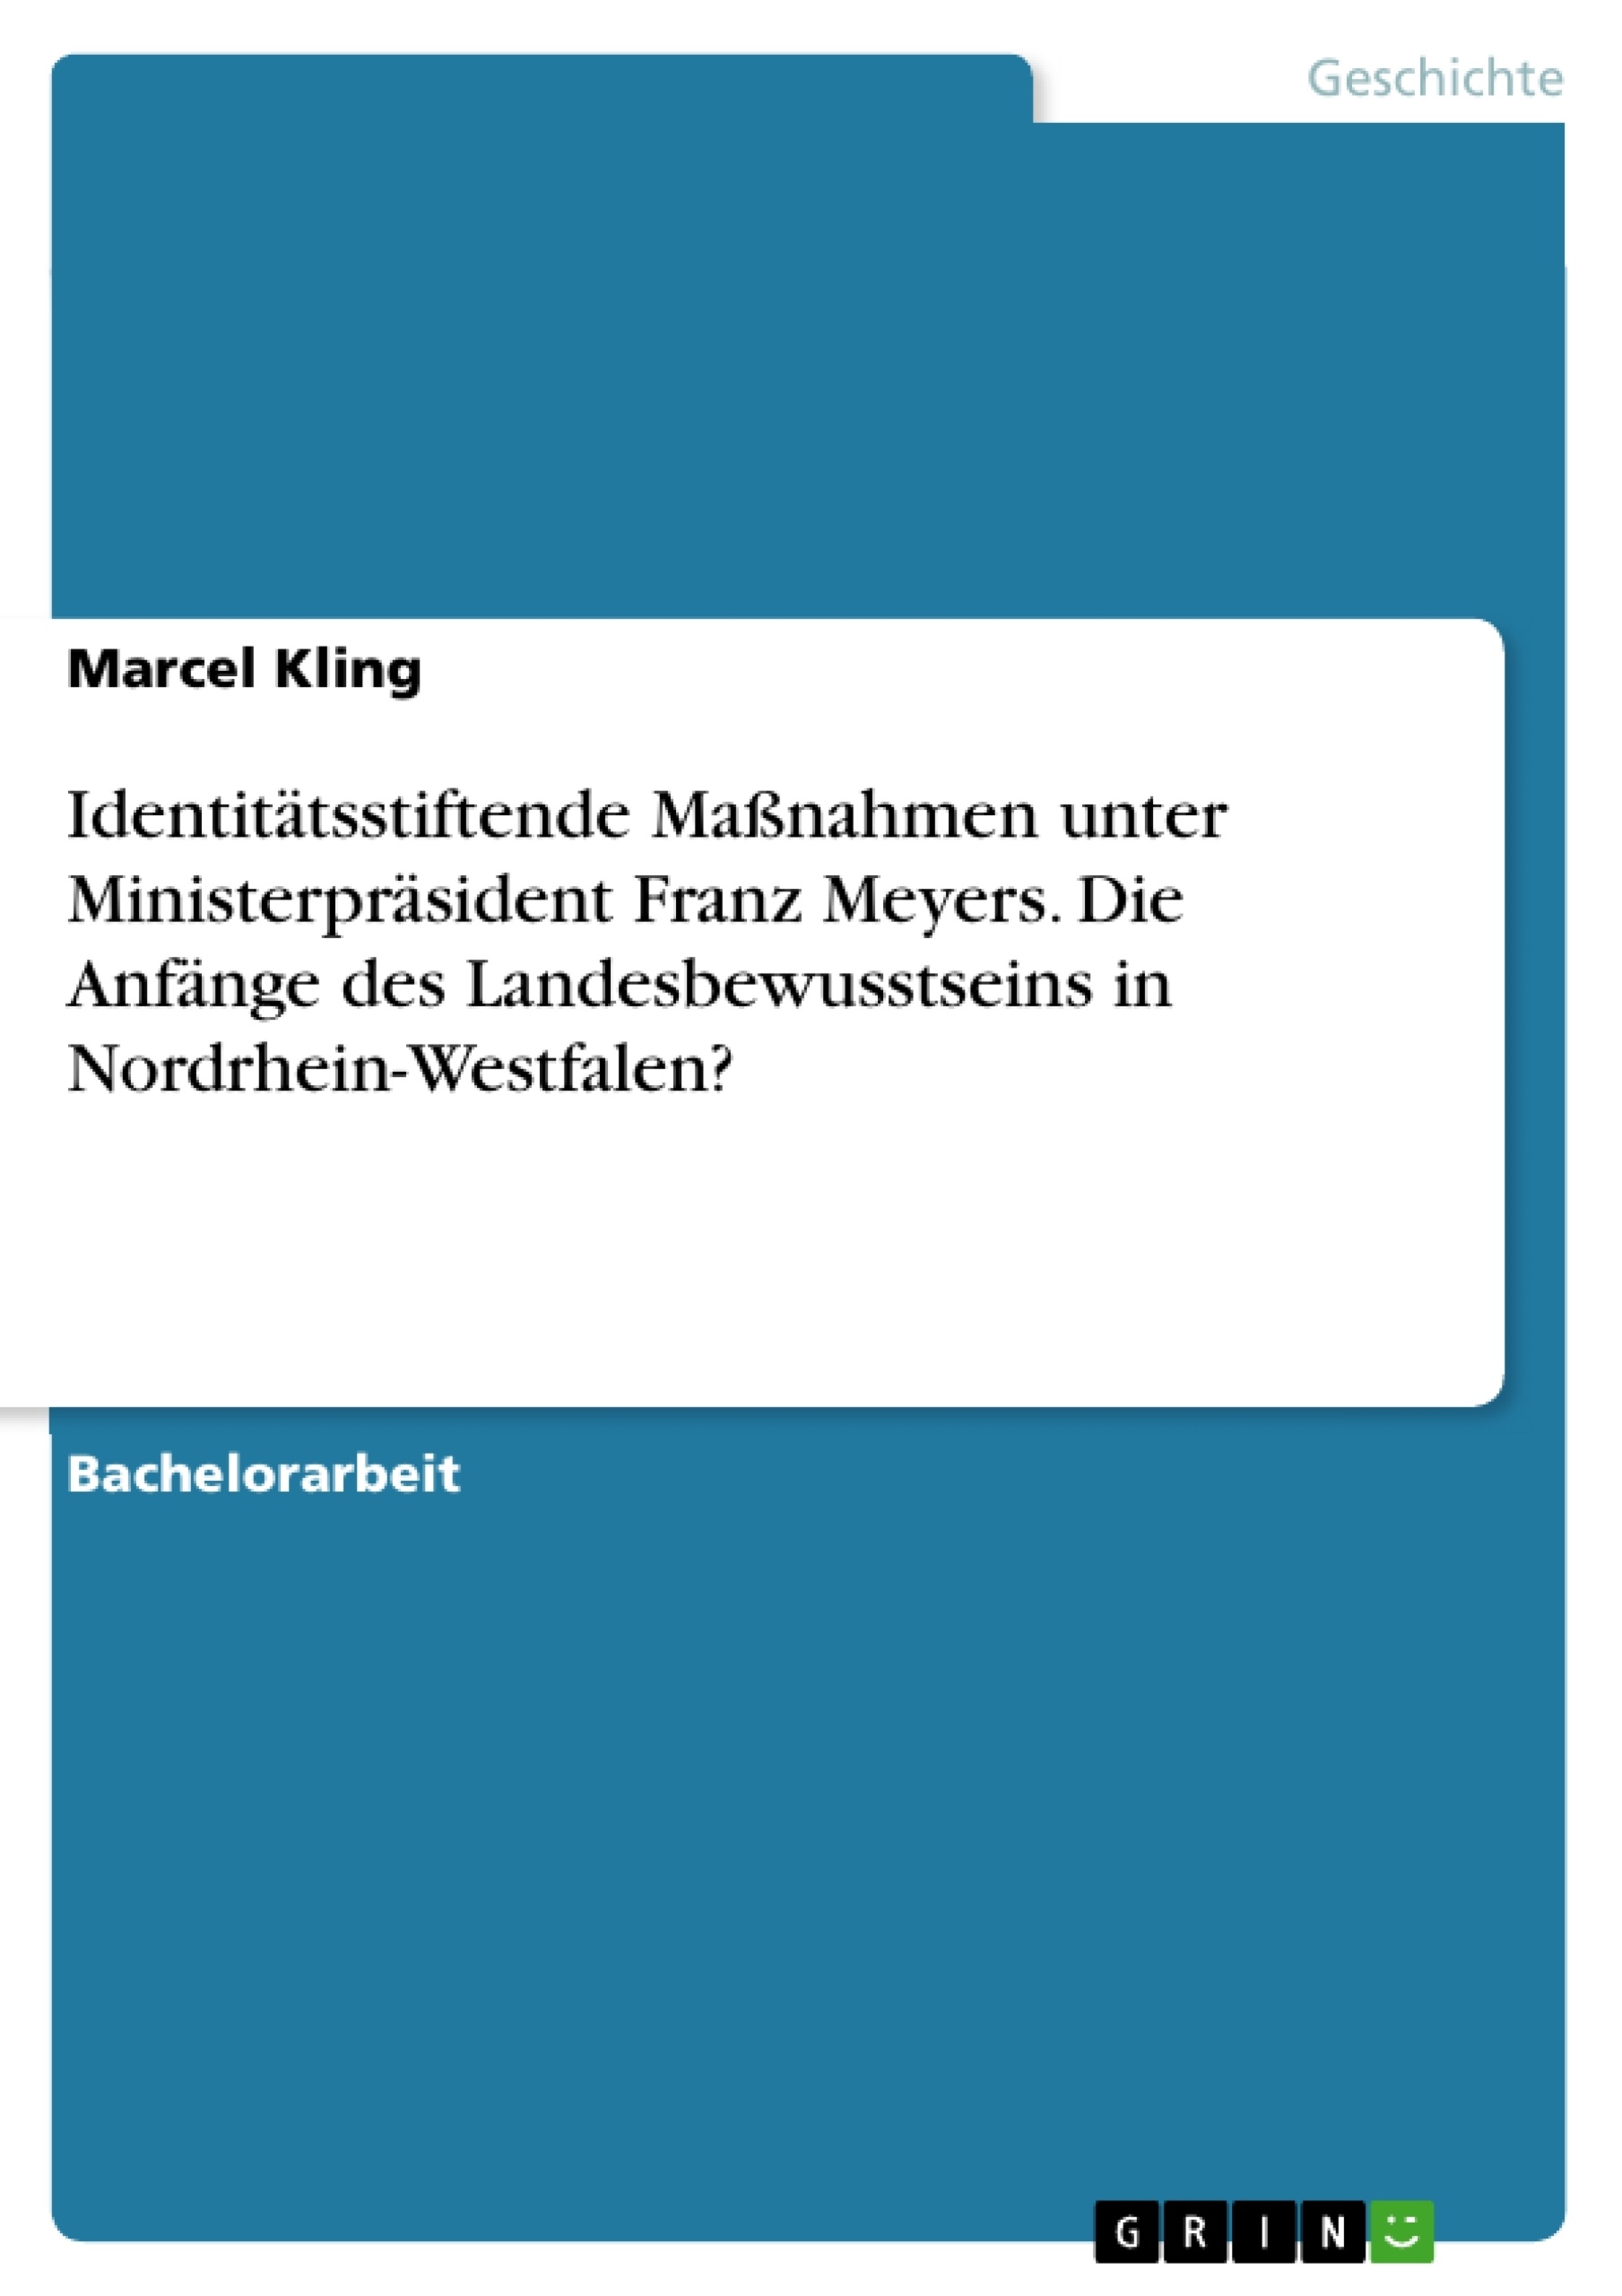 Título: Identitätsstiftende Maßnahmen unter Ministerpräsident Franz Meyers. Die Anfänge des Landesbewusstseins in Nordrhein-Westfalen?